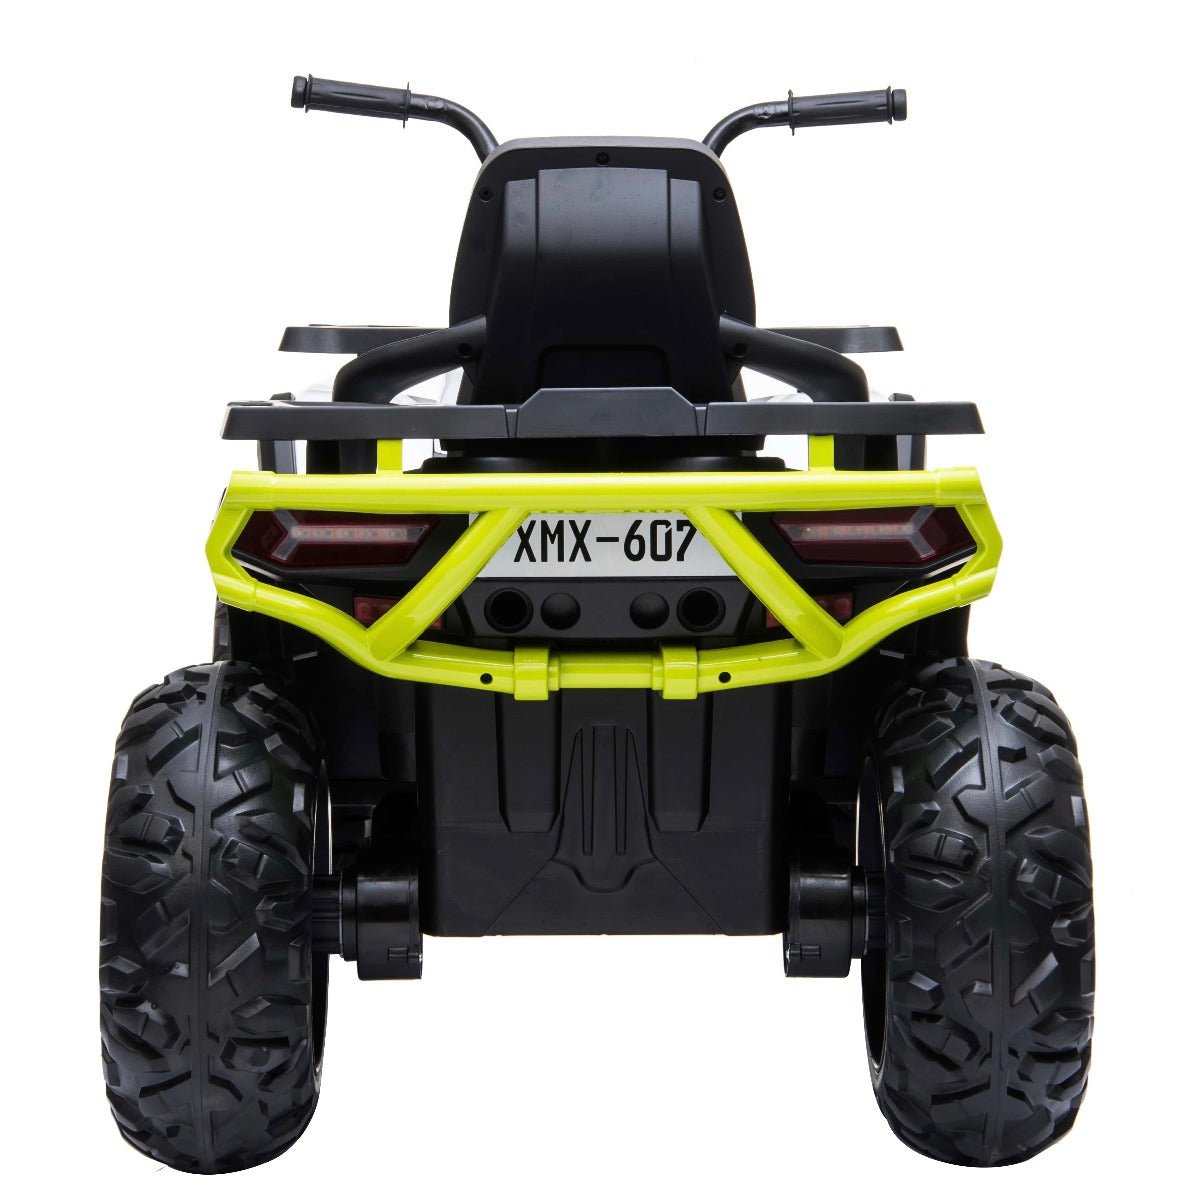 Desert D9 12v Children’s Electric Ride On ATV Quad Bike